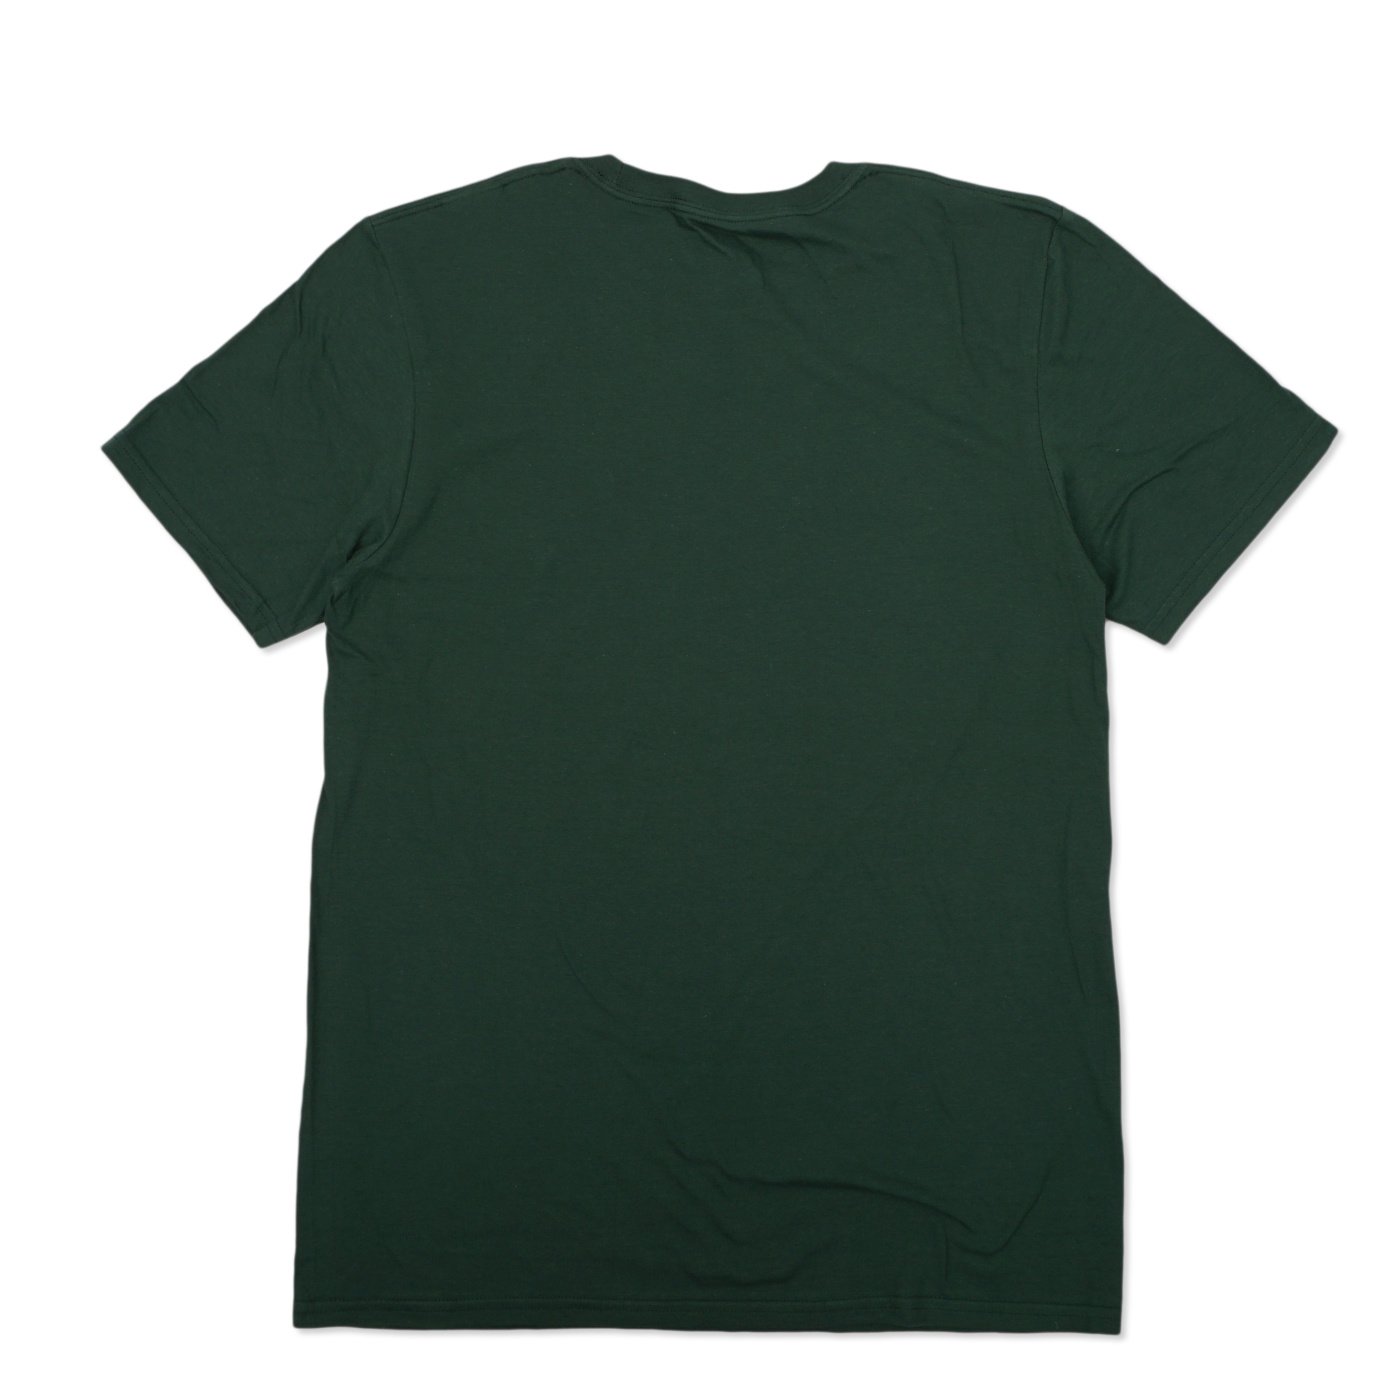 green t shirt template